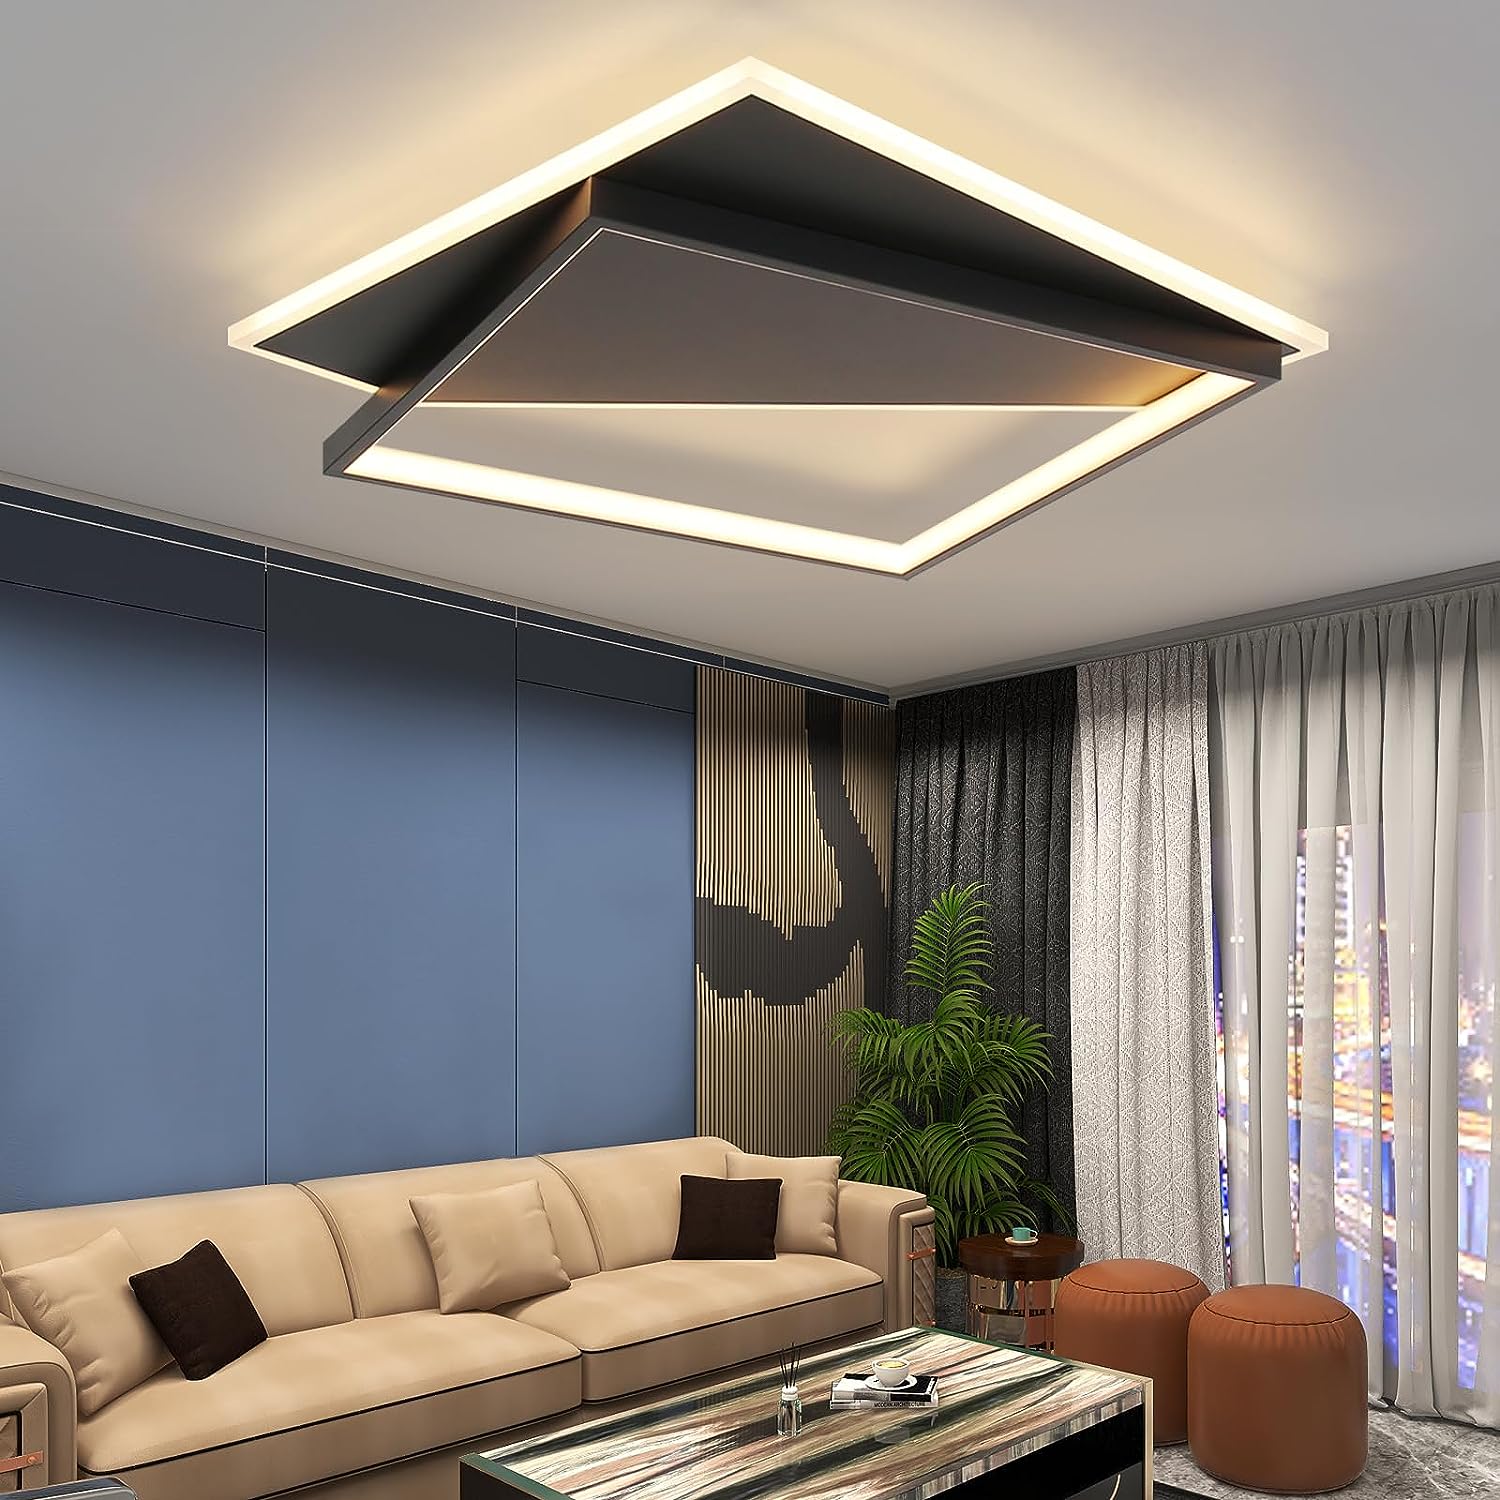 Homefire Deckenlampe LED Deckenleuchte Wohnzimmer - Dimmbar 48CM Schwarz Wohnzimmerlampe Modern Design mit Fernbedienung aus Metall Deckenbeleuchtung für Küche Esszimmer Jugendzimmer Schlafzimmer